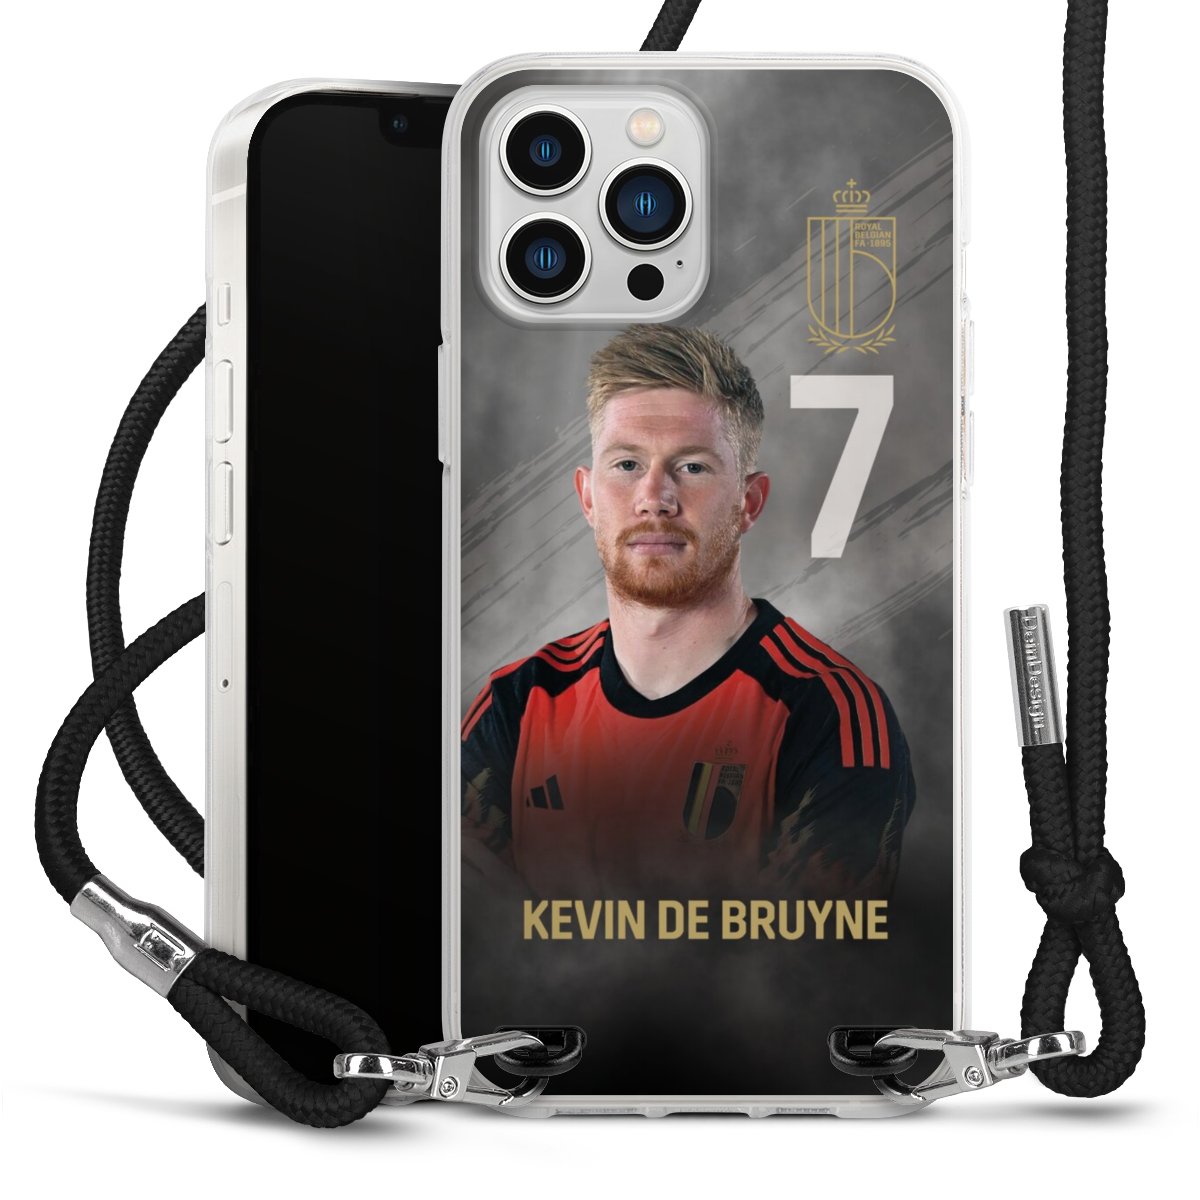 Kevin De Bruyne 7 